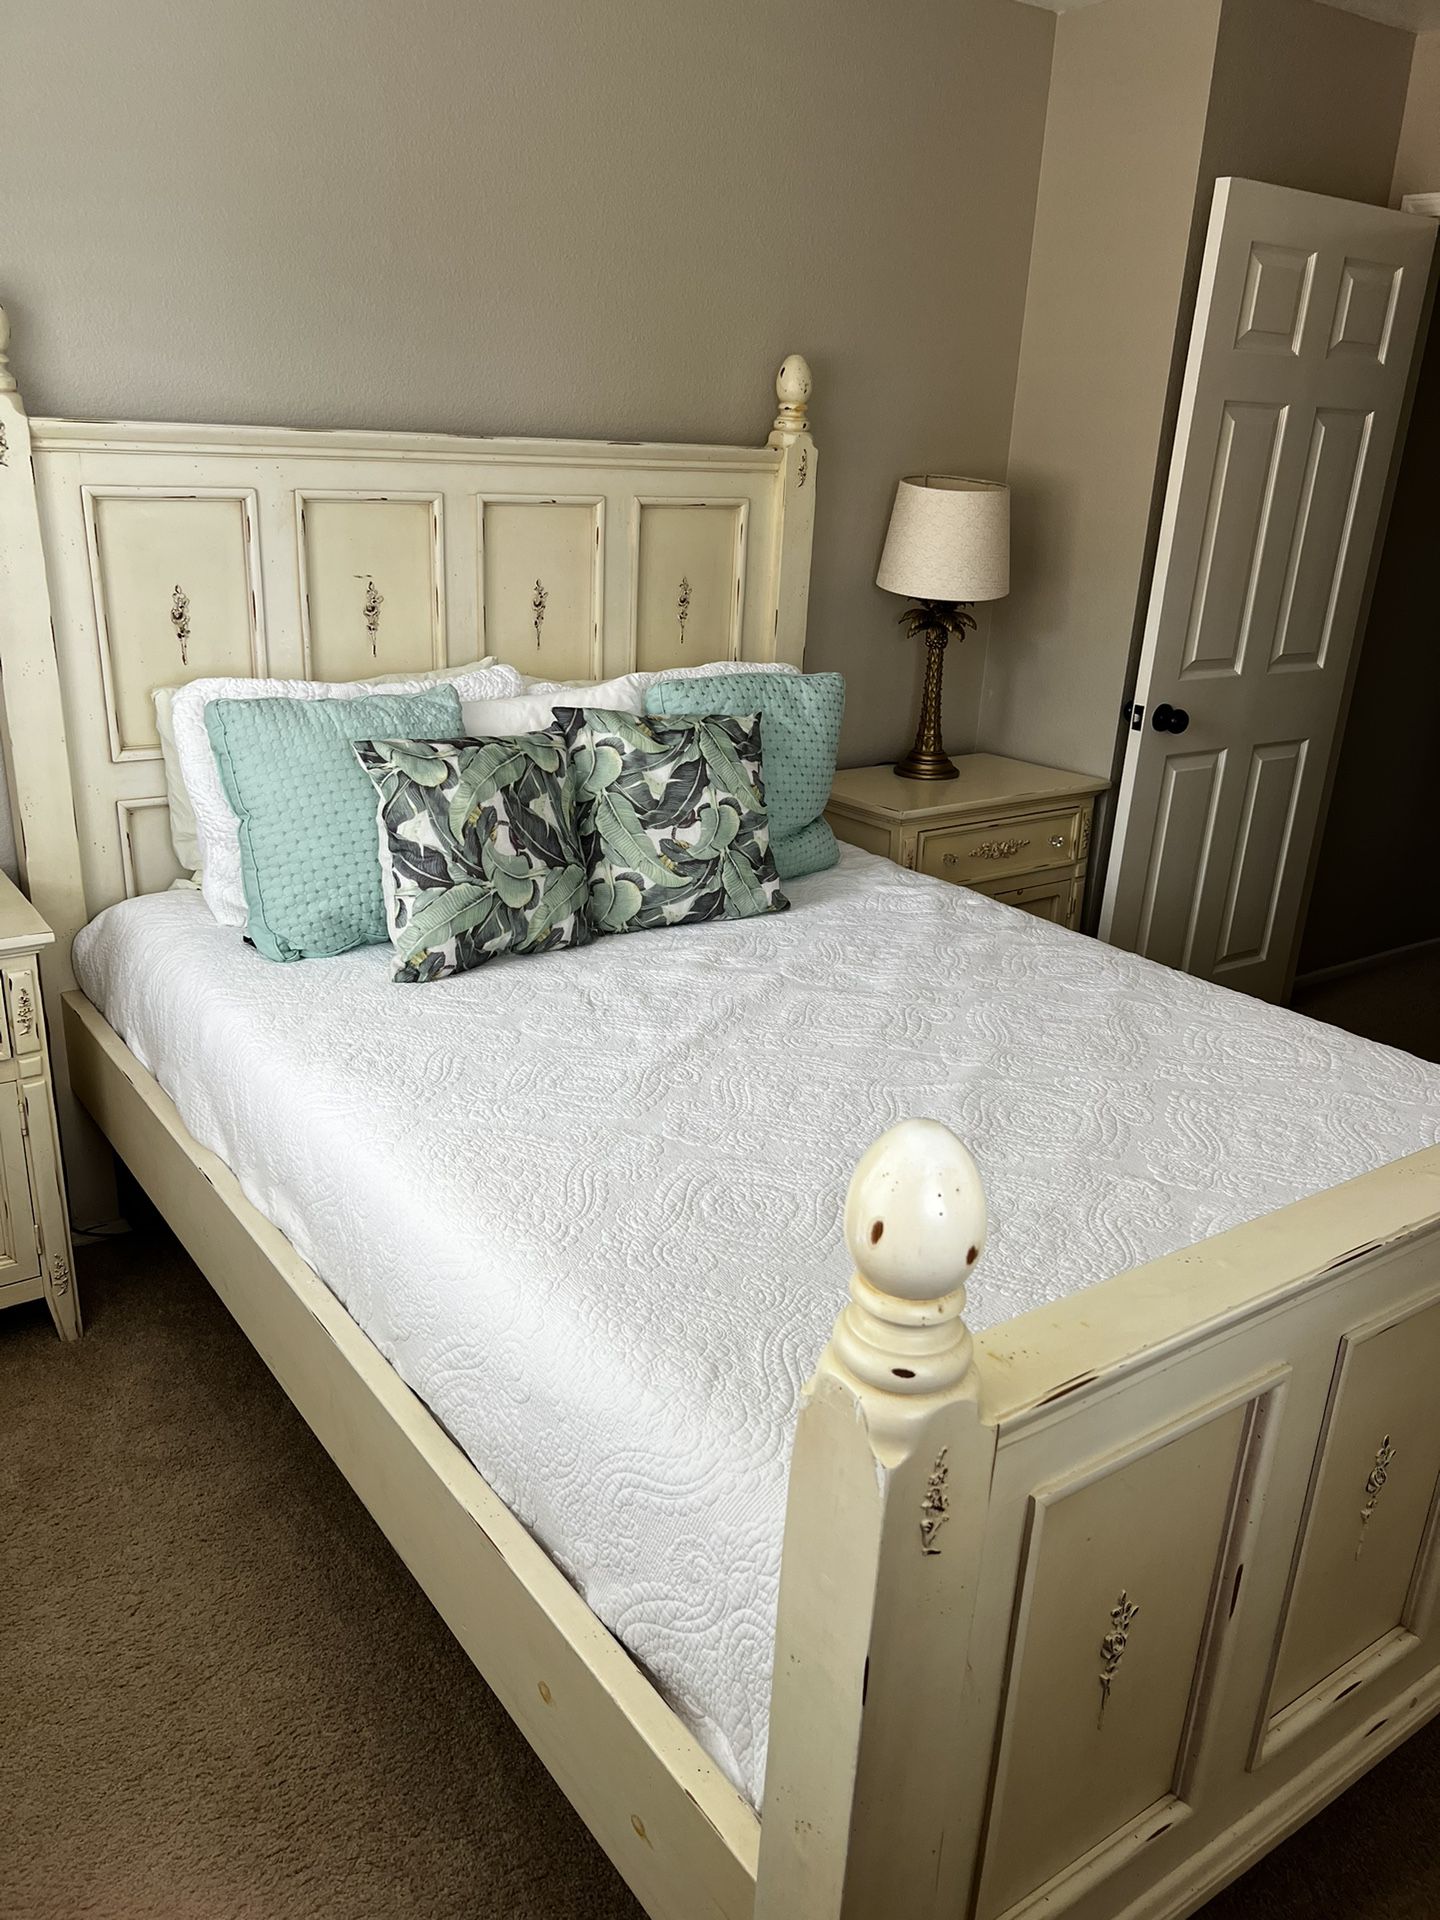 Queen Bedroom Set—Bed, Nightstands, Mirror